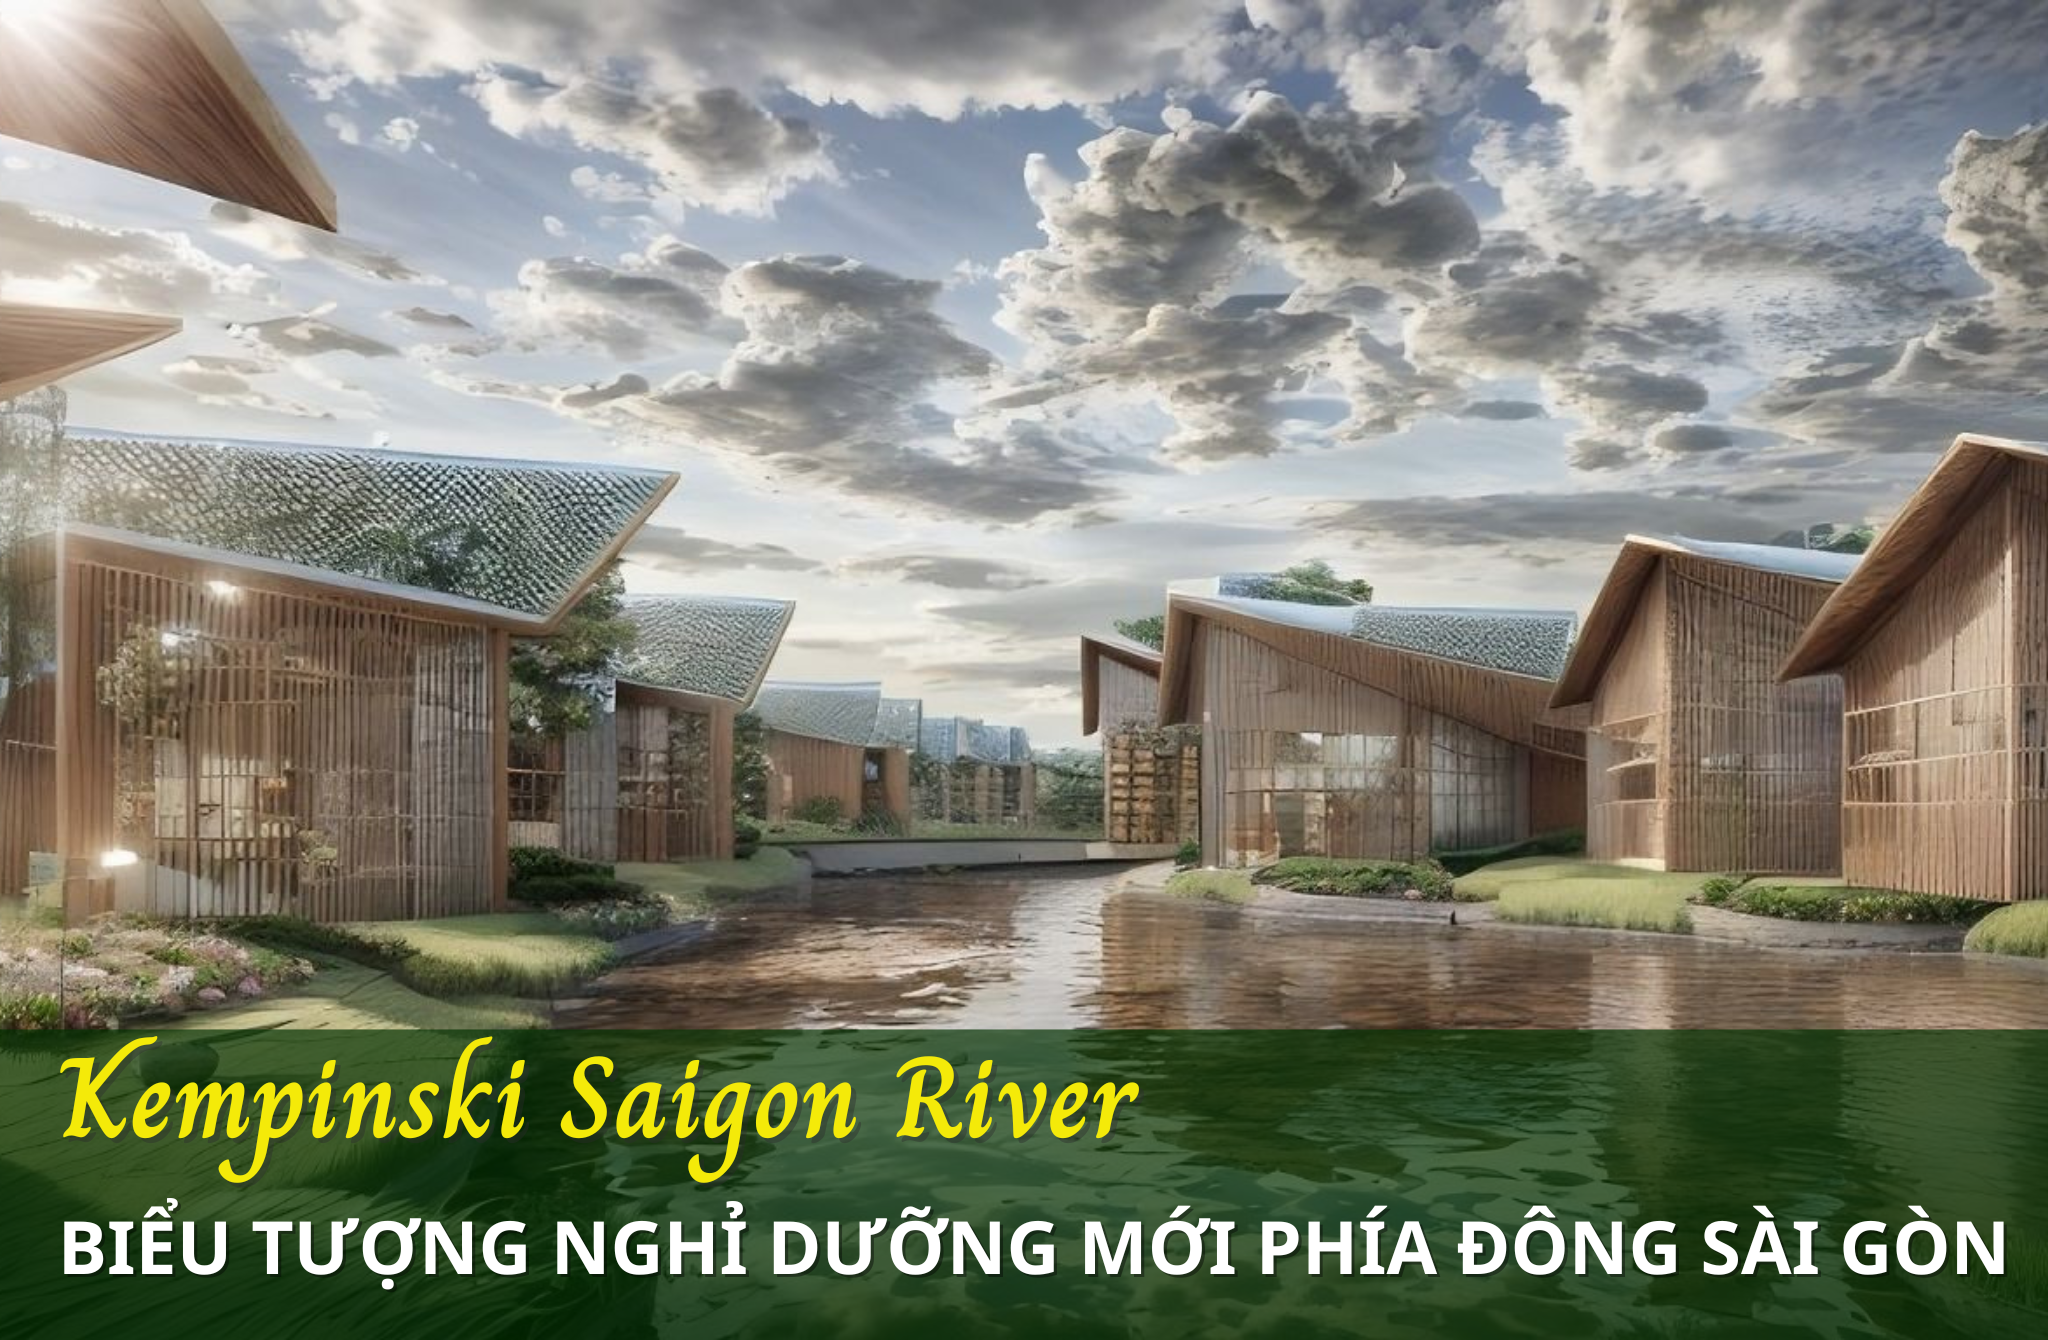 Kempinski Saigon River – Biểu tượng nghỉ dưỡng mới cho giới thượng lưu tại Việt Nam